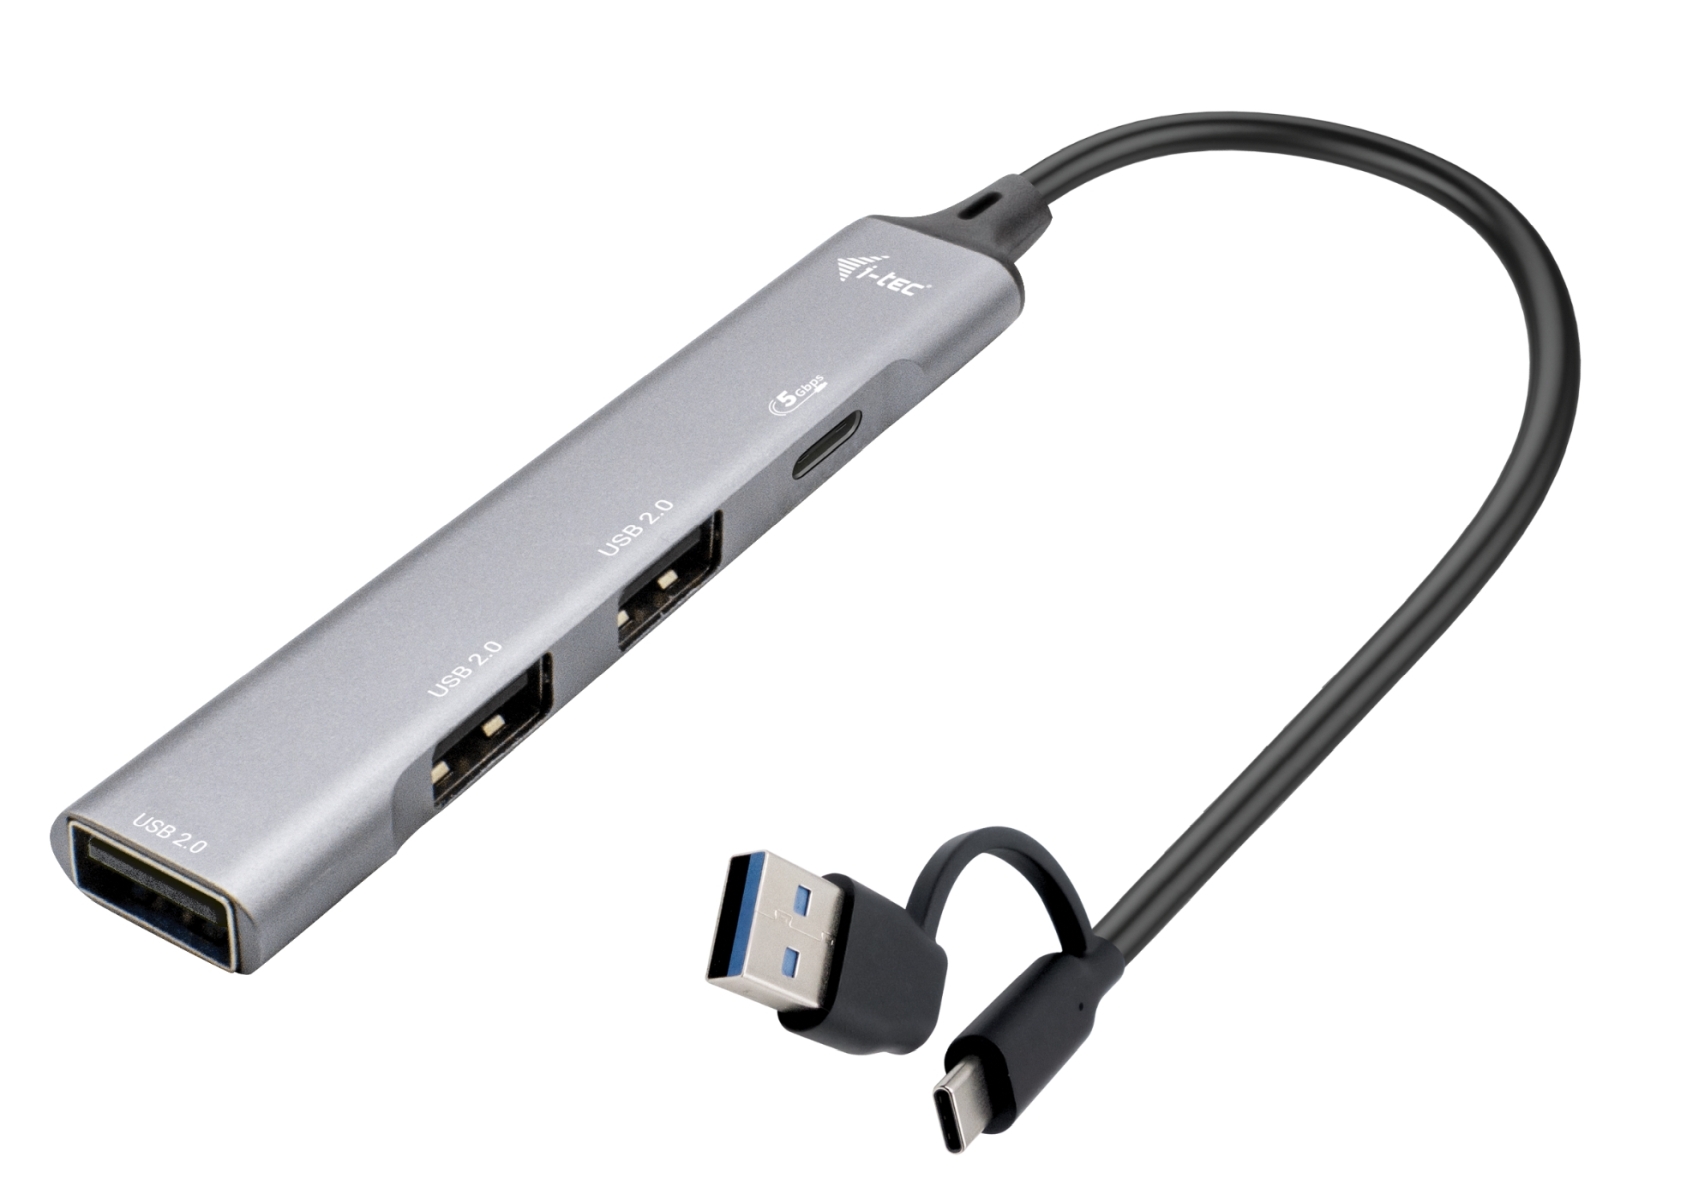 i-tec USB-A/USB-C Metal HUB 1x USB-C 3.1 + 3x USB 2.0